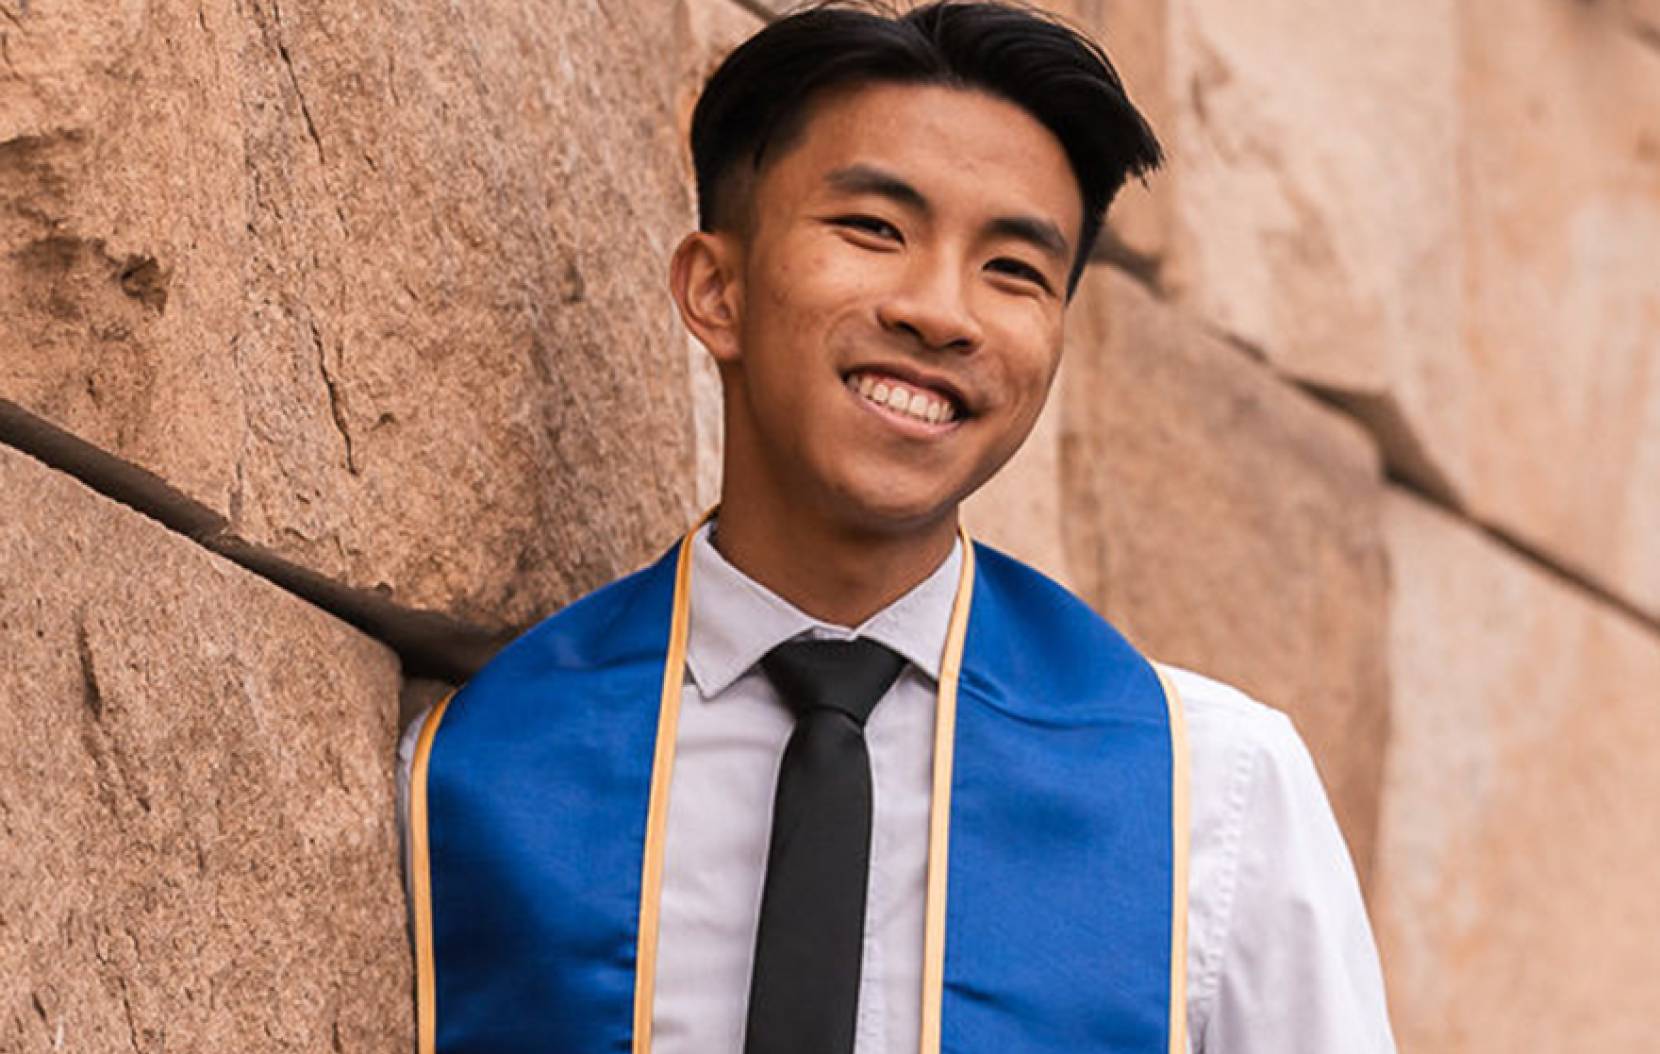 Kevin Si at graduation